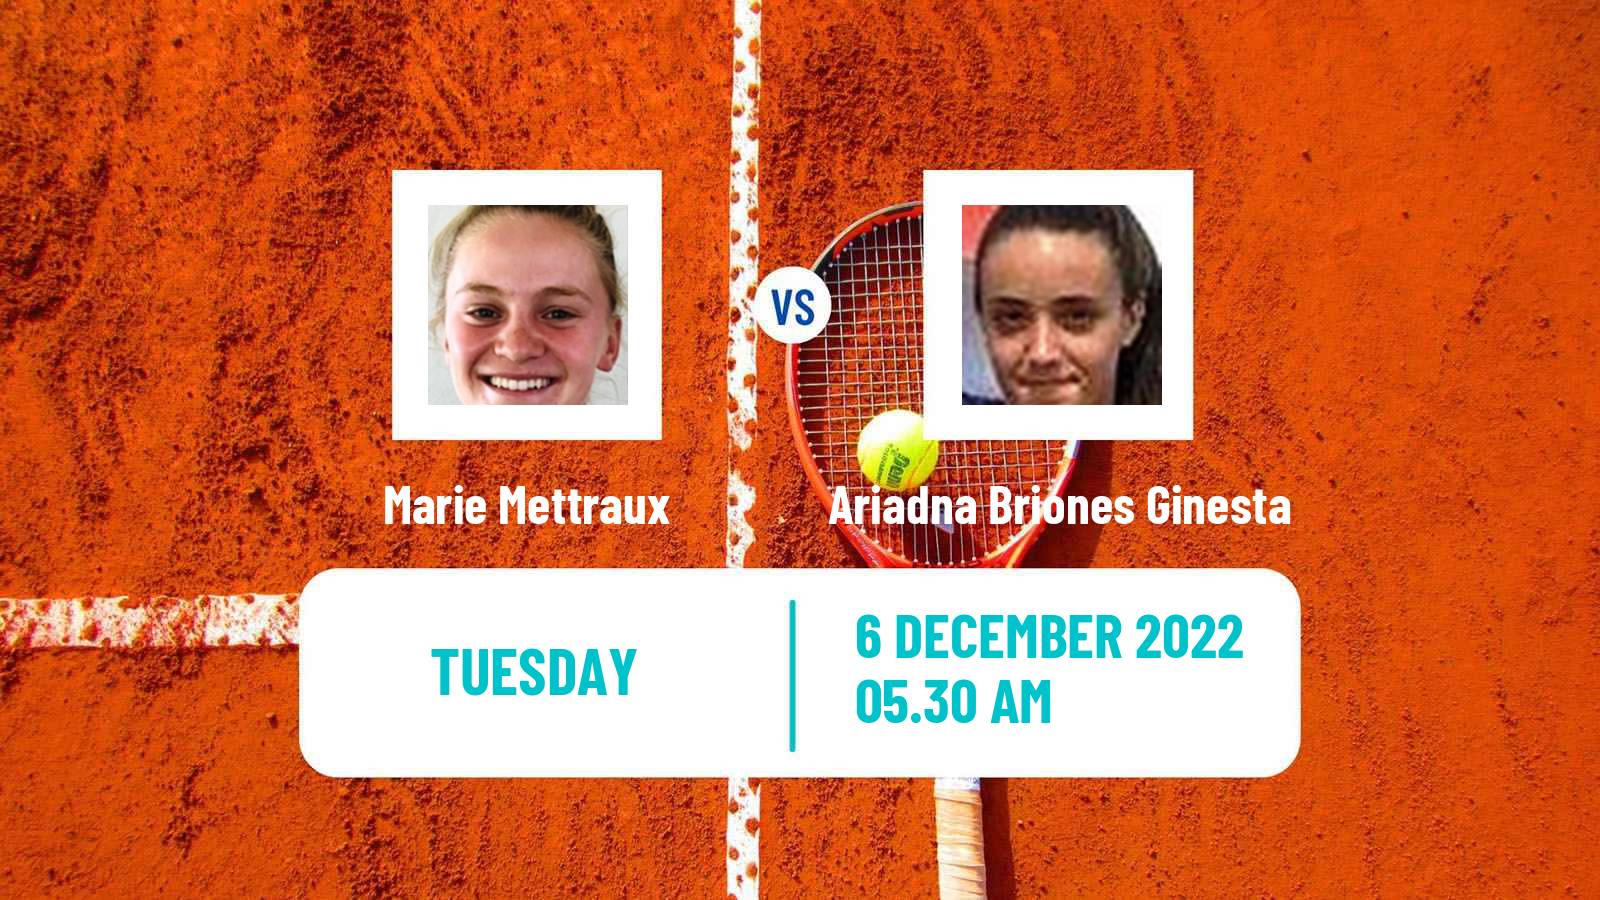 Tennis ITF Tournaments Marie Mettraux - Ariadna Briones Ginesta